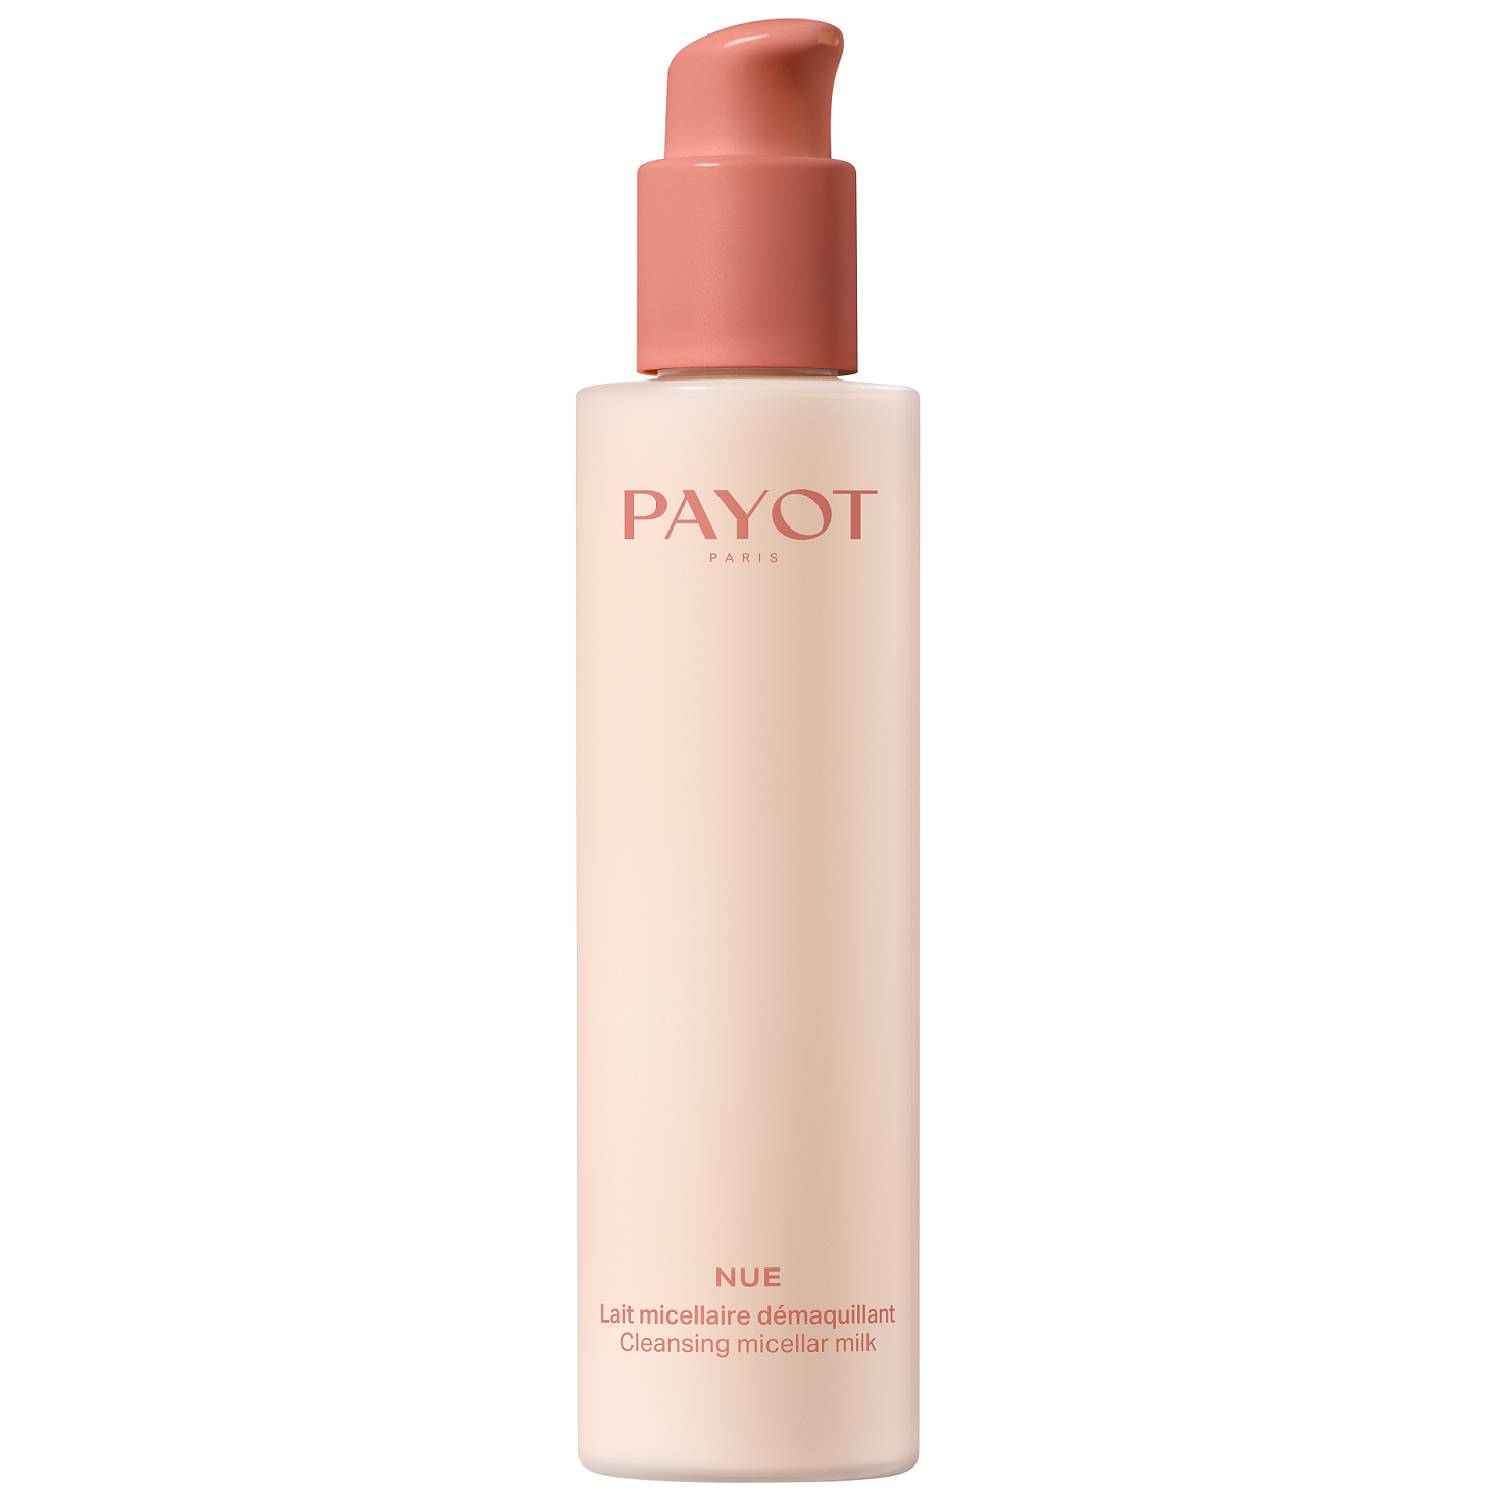 Payot Мицеллярное молочко для снятия макияжа, 200 мл (Payot, Nue) средство для снятия макияжа payot nue 100 мл